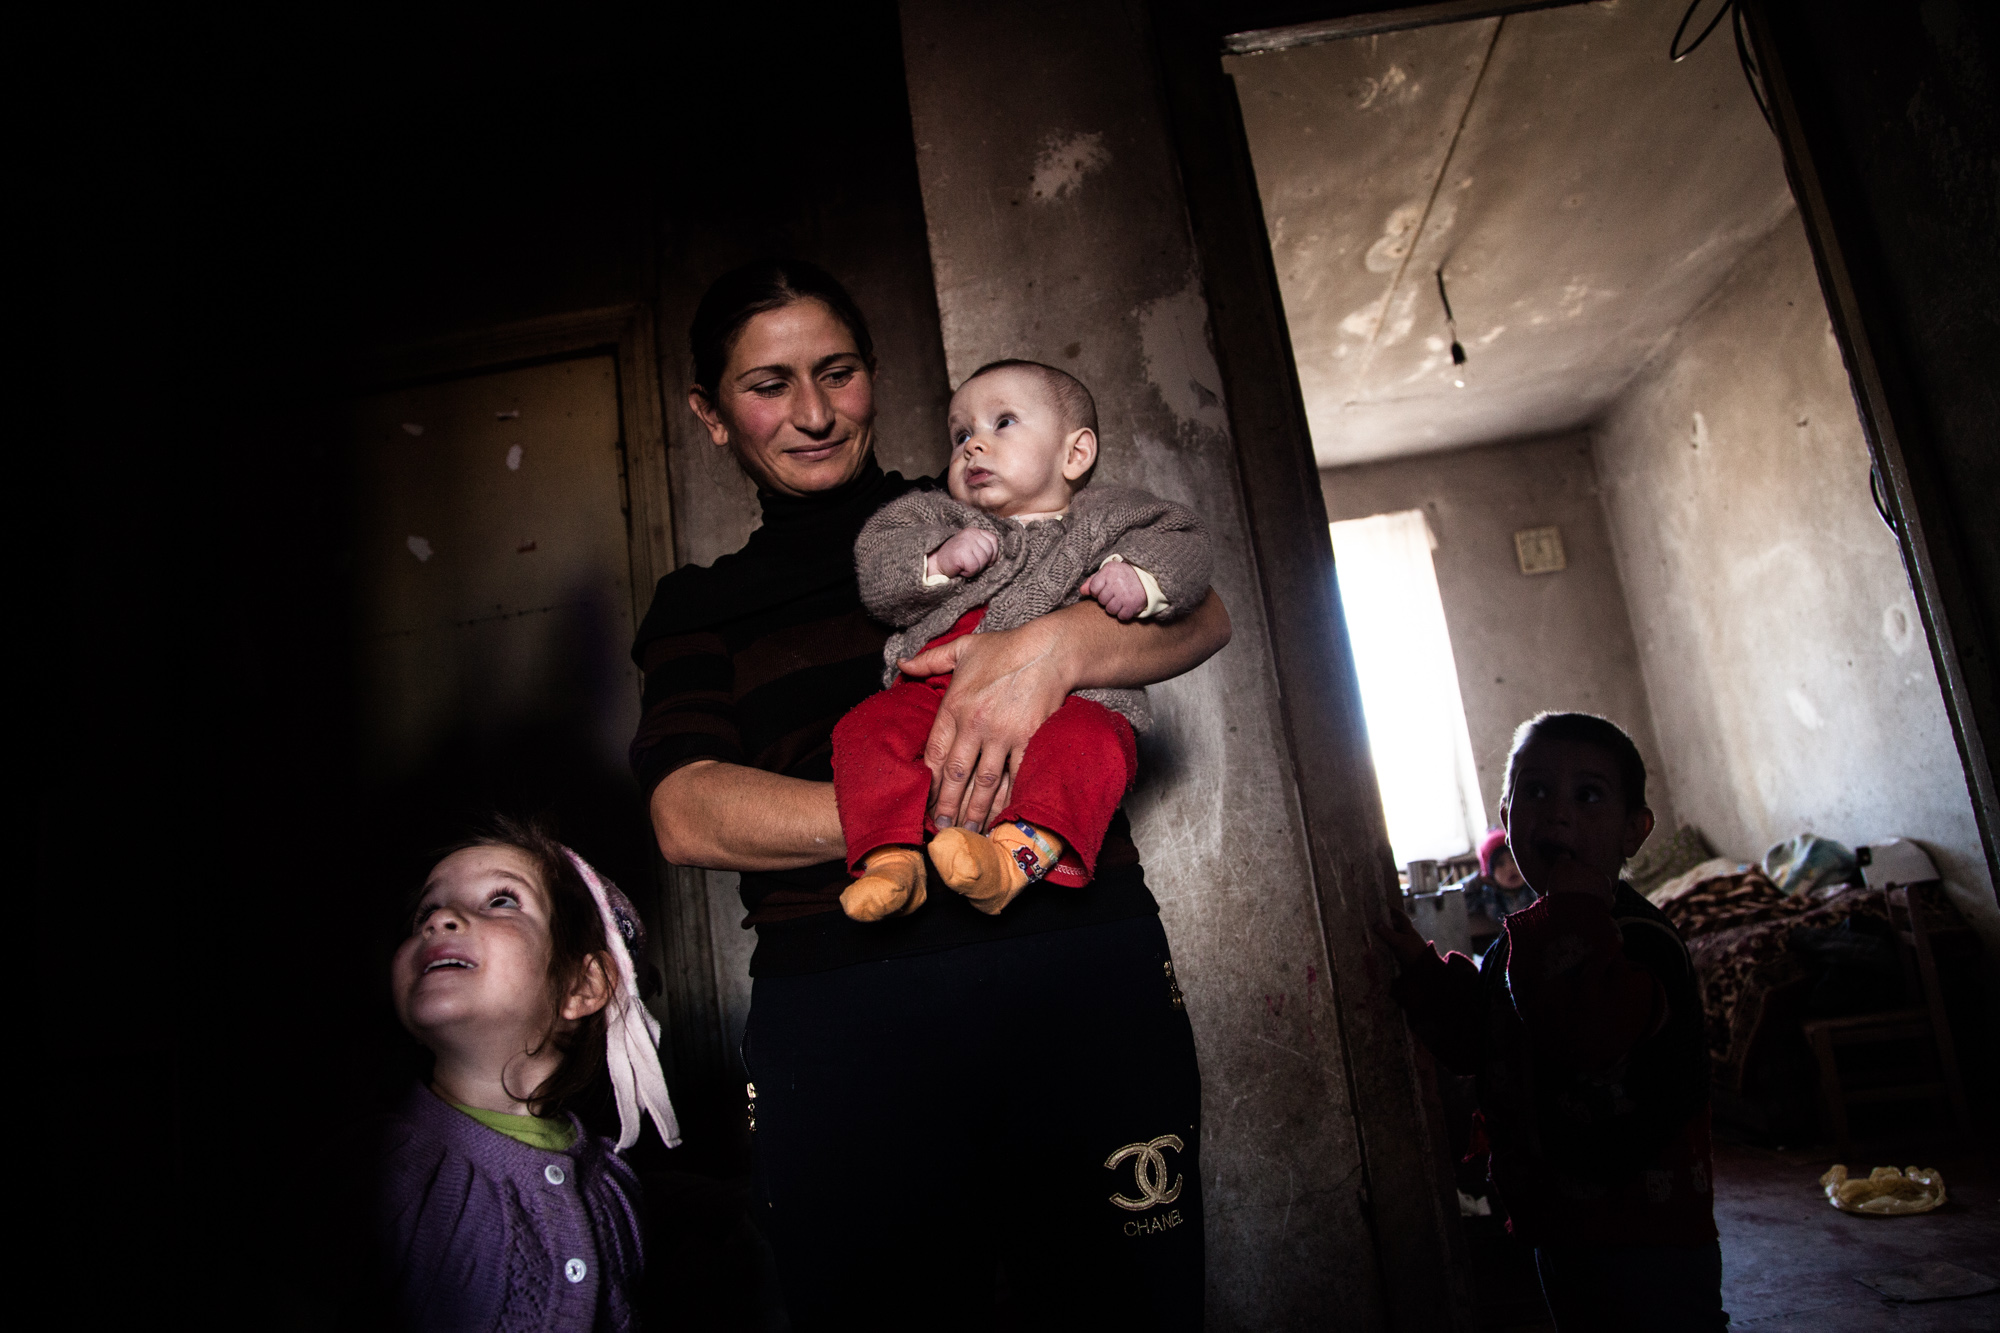  Aïda n'a pas de travail. Elle s'occupe de ses 7 enfants à la maison. Mariam, la dernière, a 4 mois. Outre le faible salaire de Vova, la famille n'a que l'aide humanitaire pour survivre. 